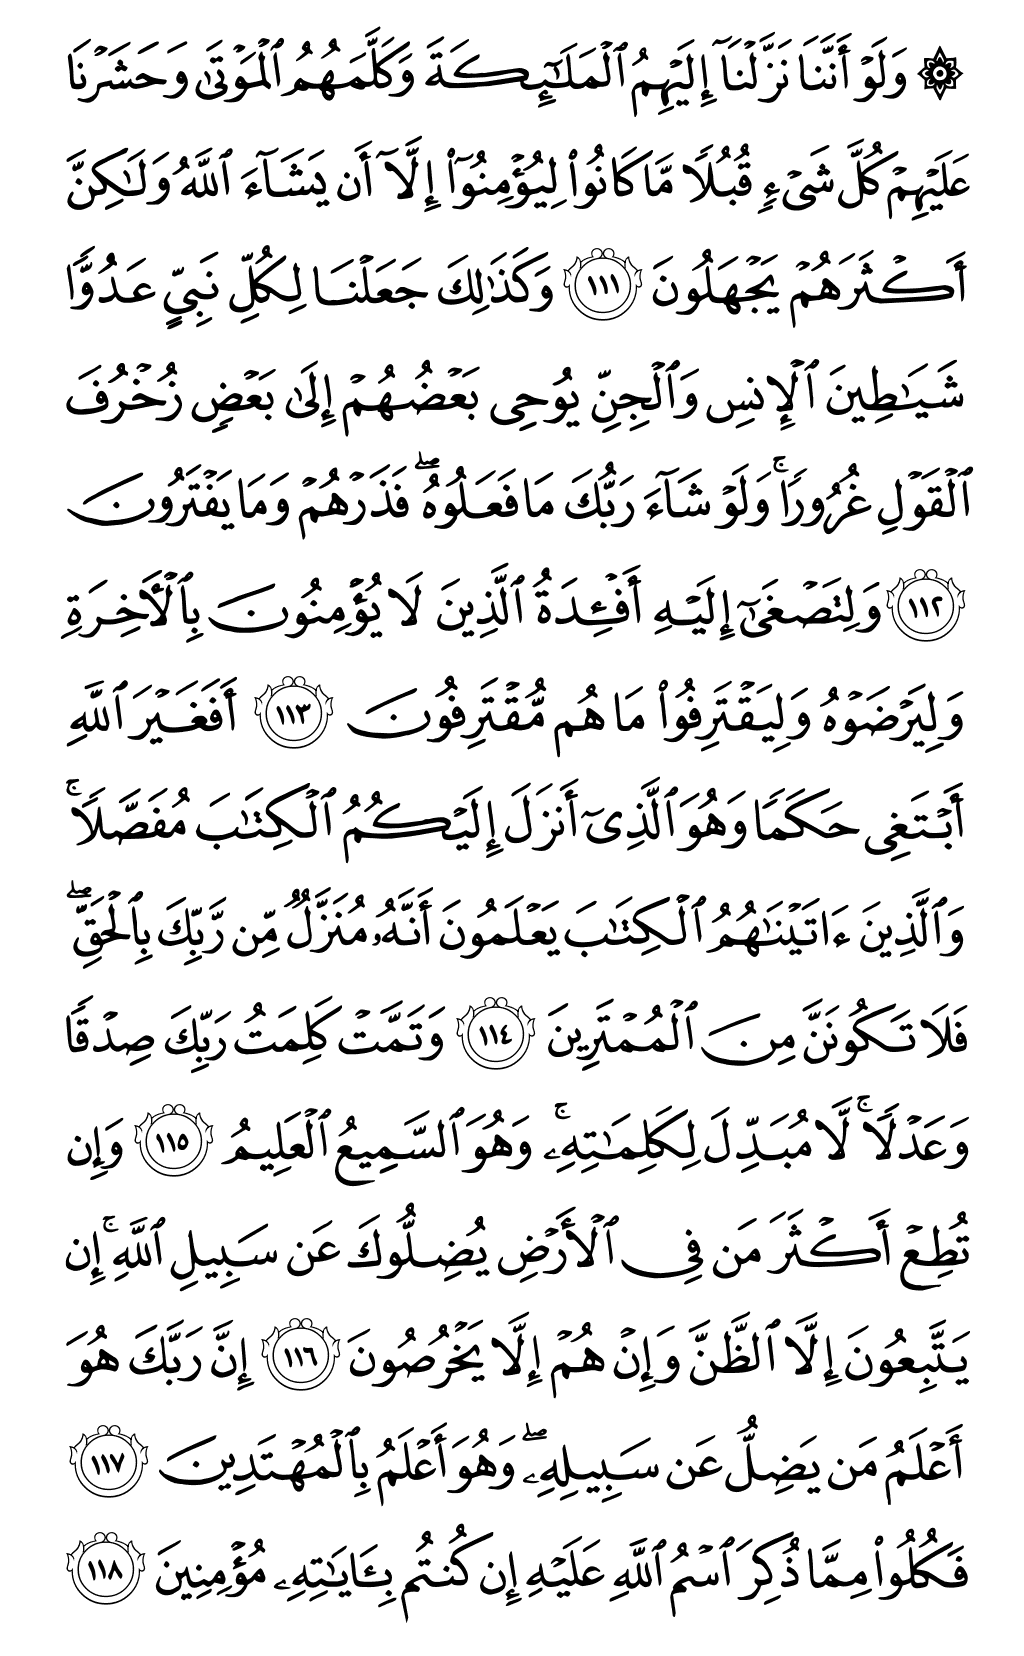 الصفحة رقم 142 من القرآن الكريم